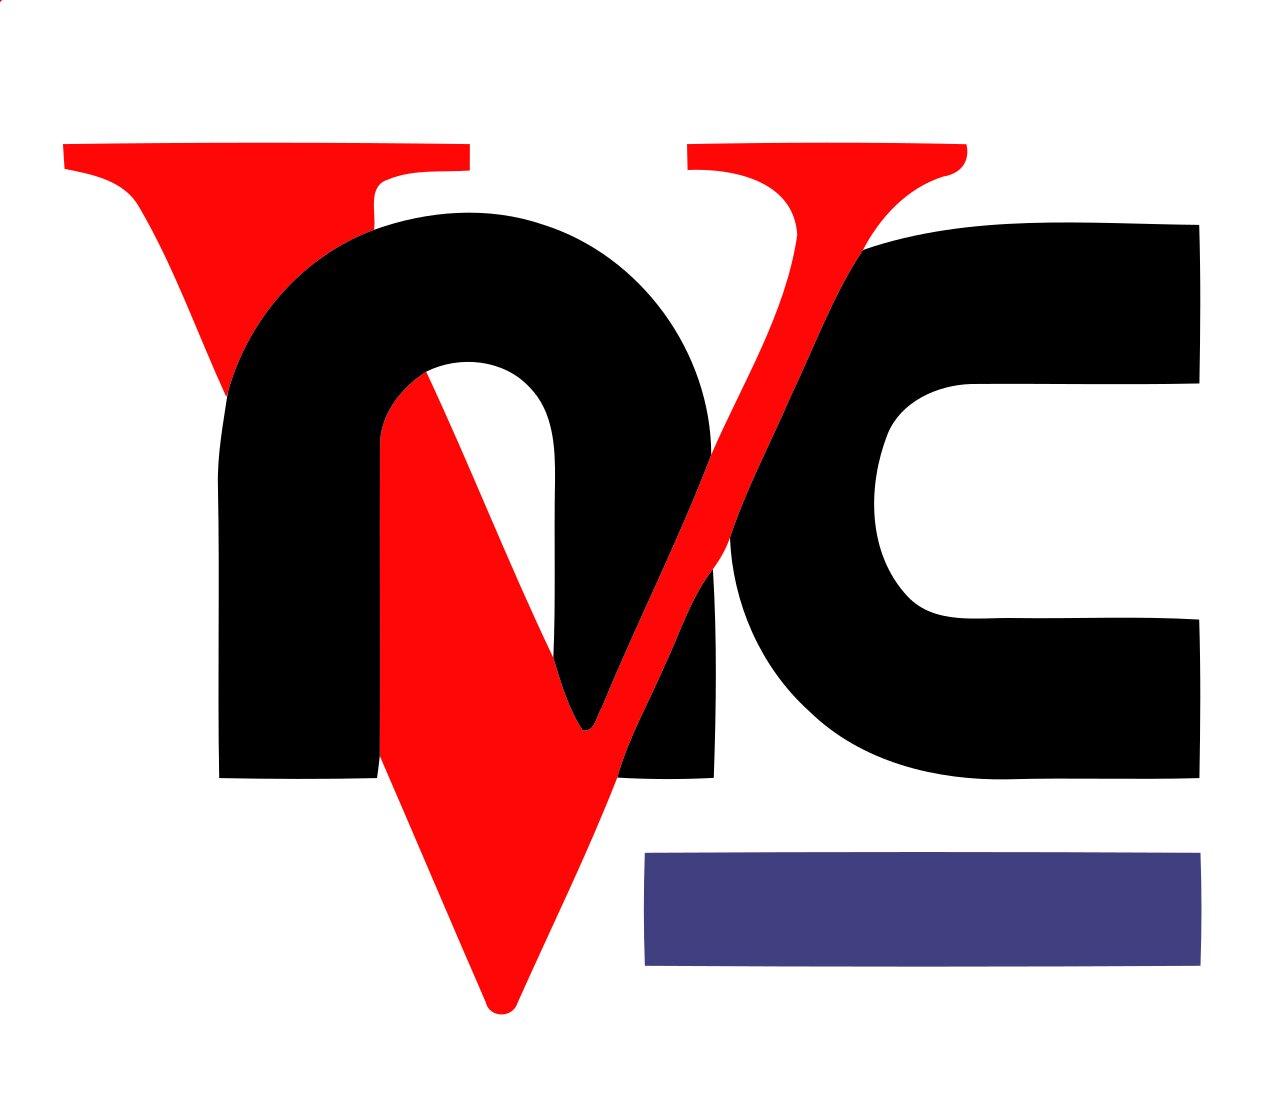 vnc logo